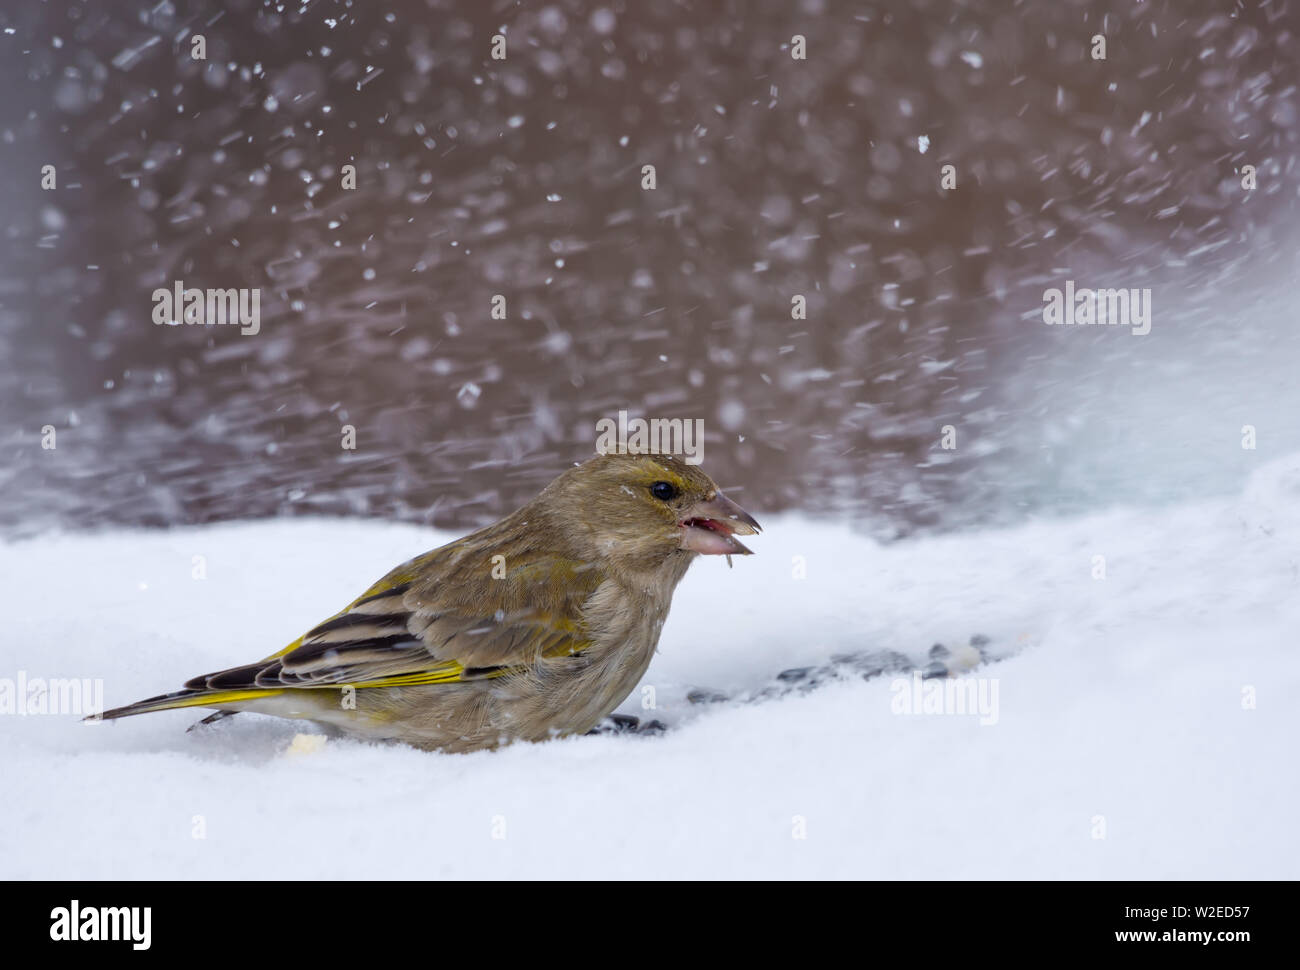 Weibliche Europäische Greeenfinch Feeds auf kalten Schnee in schweren Winter Blizzard Stockfoto